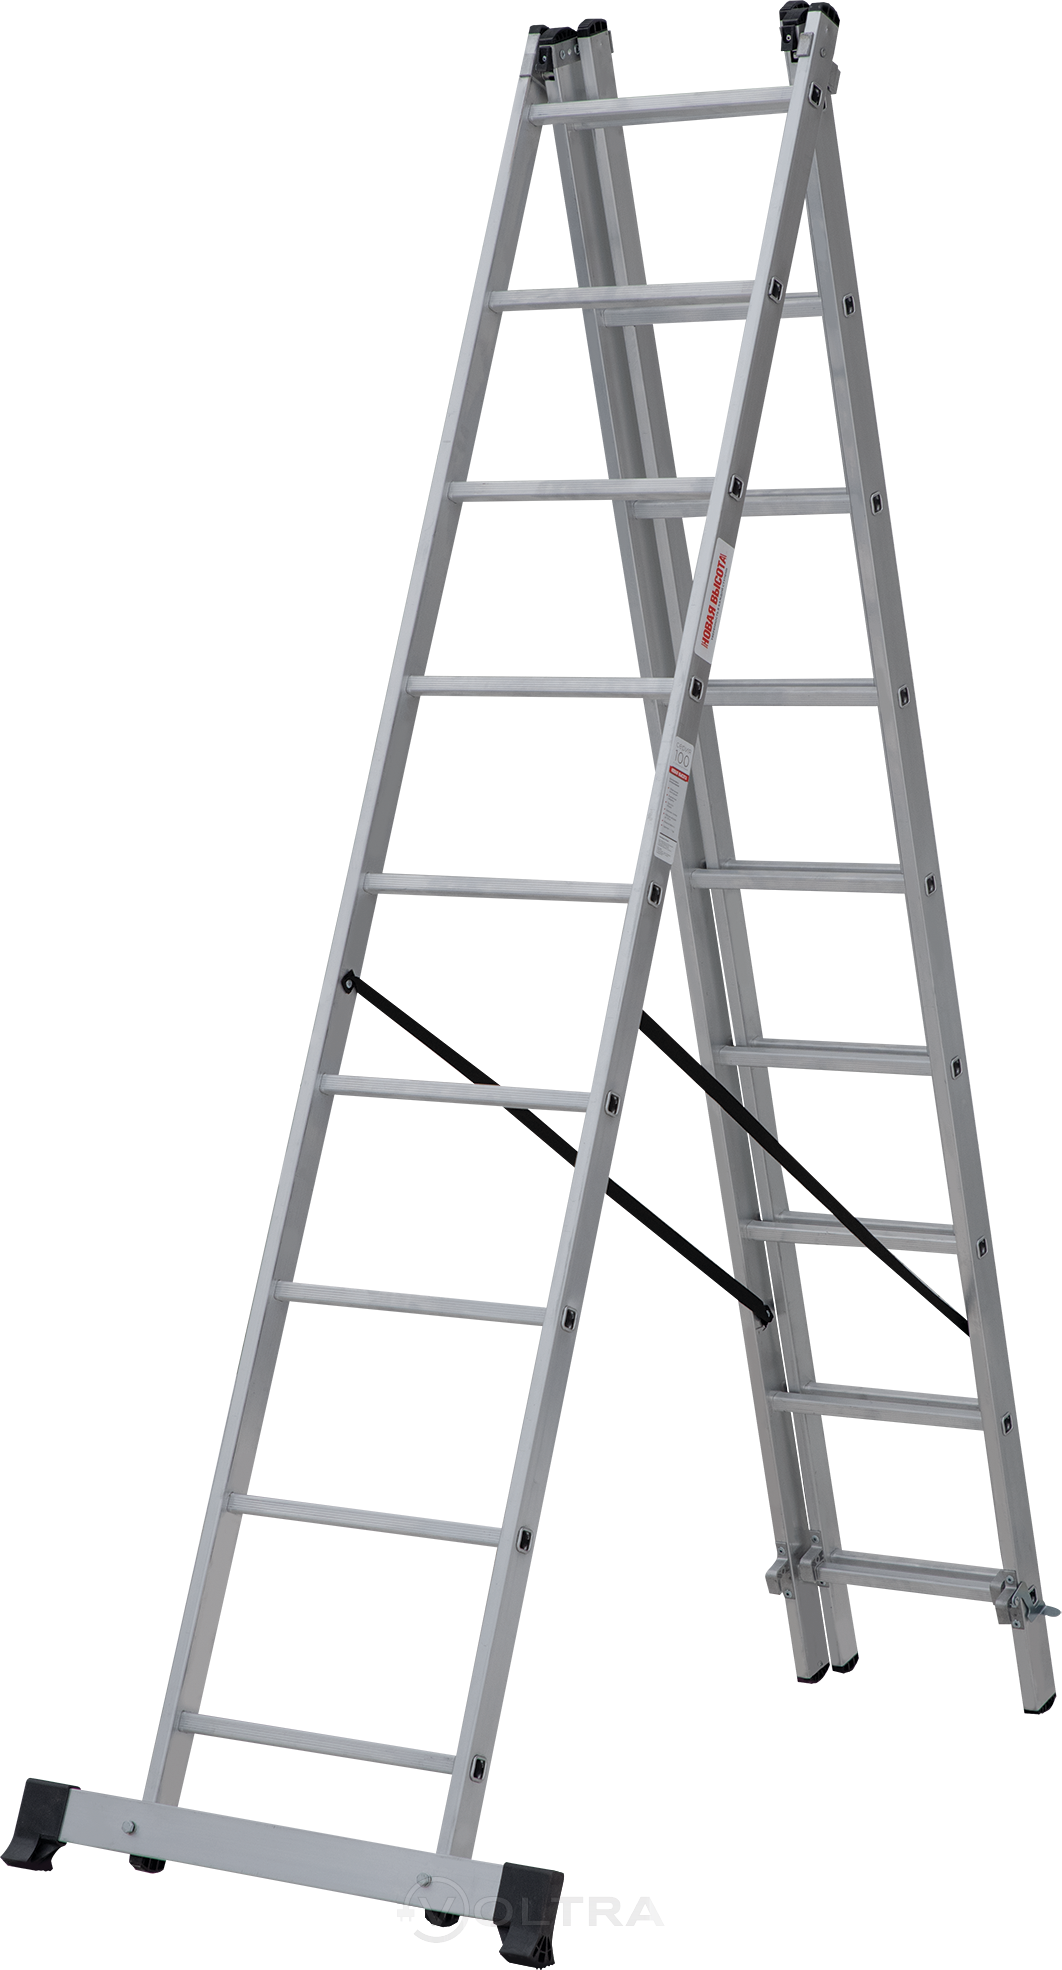 Лестница трехсекционная алюминиевая 552см 10.3кг Новая Высота NV1230 (1230309)